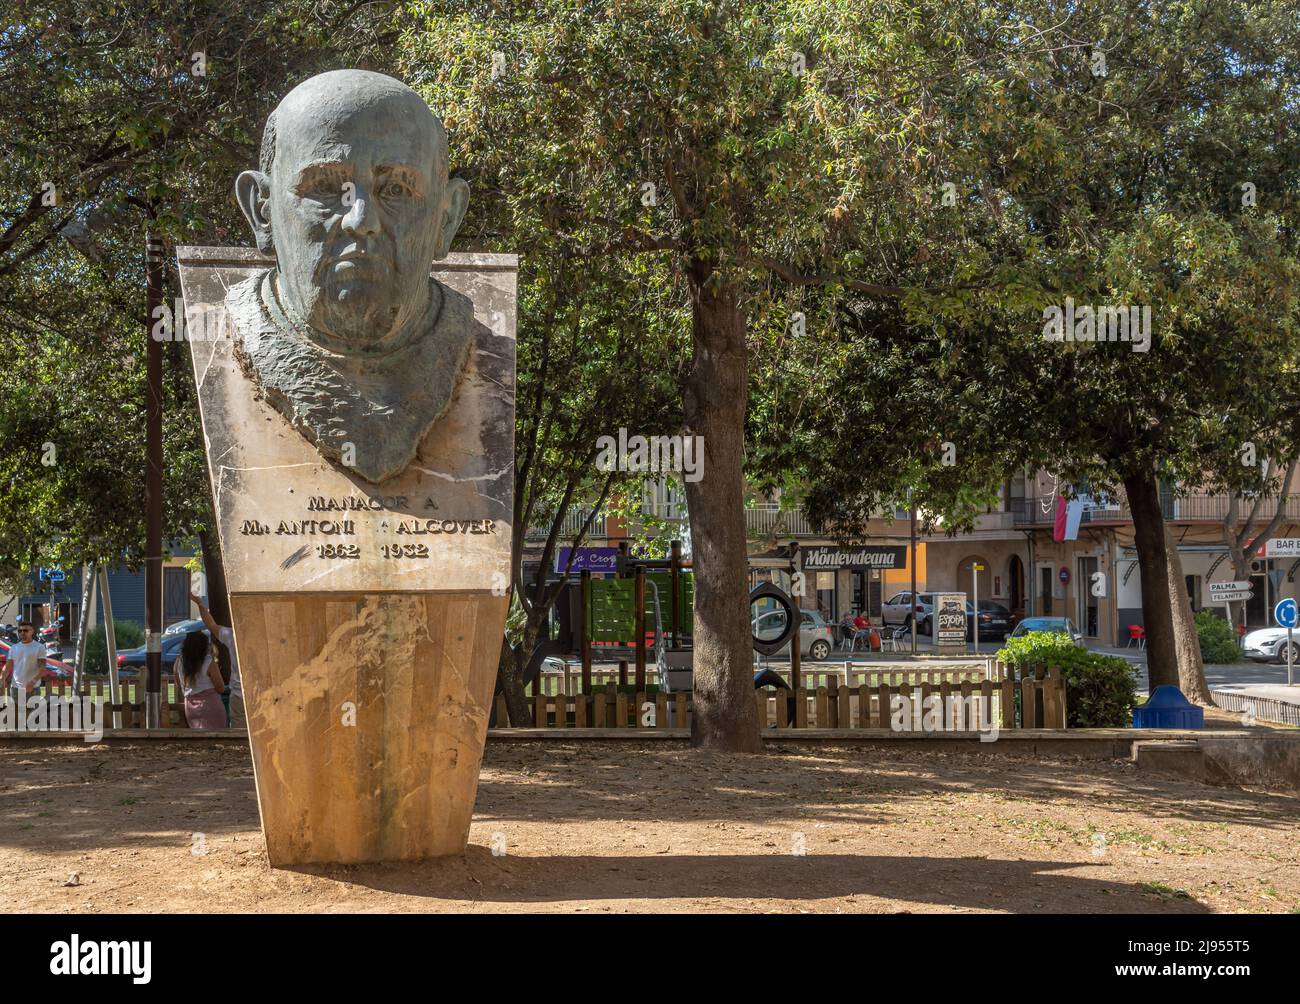 Manacor, Espagne; mai 14 2022: Buste sculptural en bronze de Mossen Antoni Alcover, situé dans un parc dans le centre historique de la ville majorquine de Manaco Banque D'Images